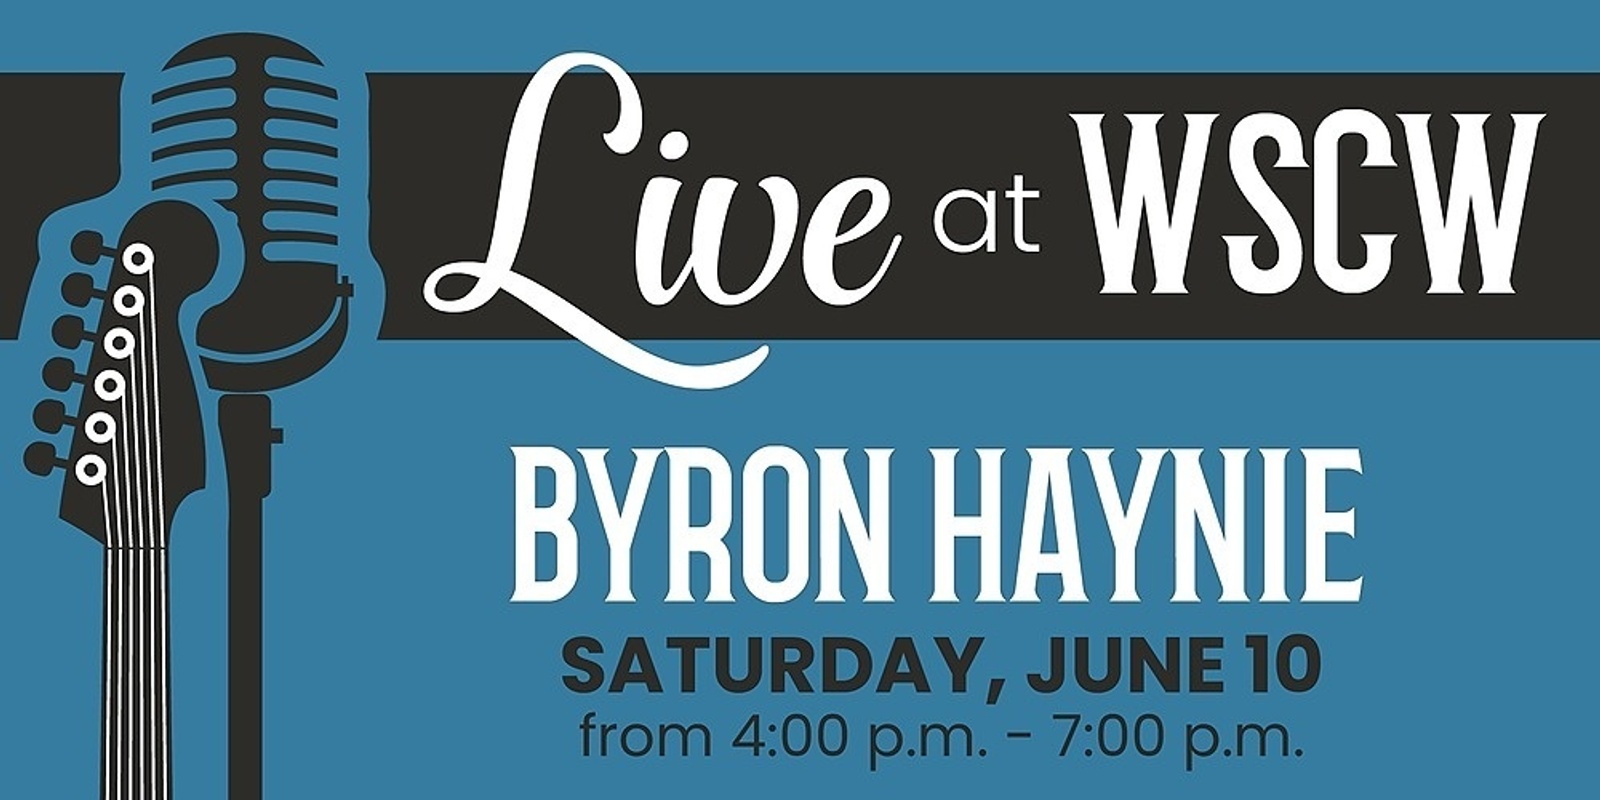 Byron Haynie Live at WSCW June 10